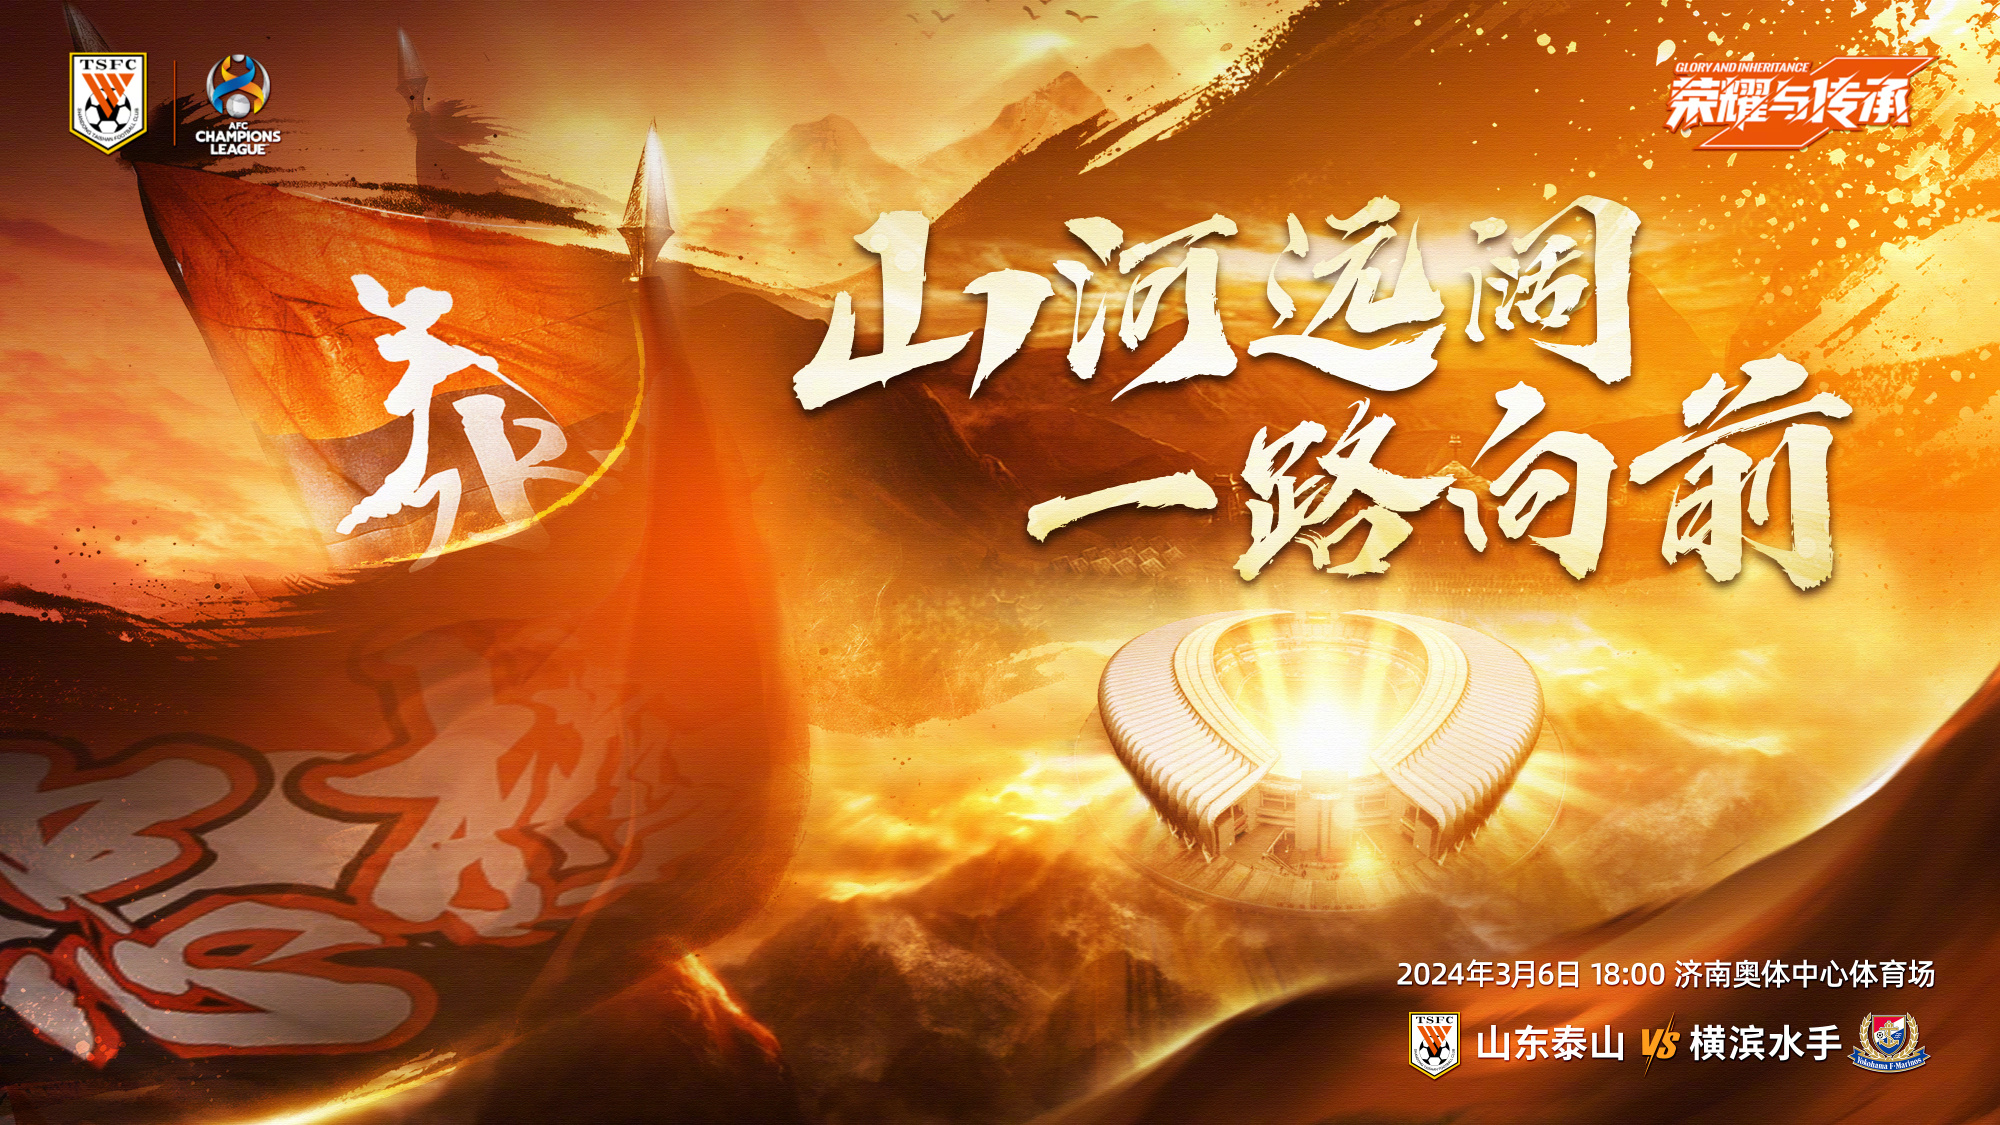 【预告】今晚亚冠14决赛泰山vs横滨水手，WEAREONE一致对外！